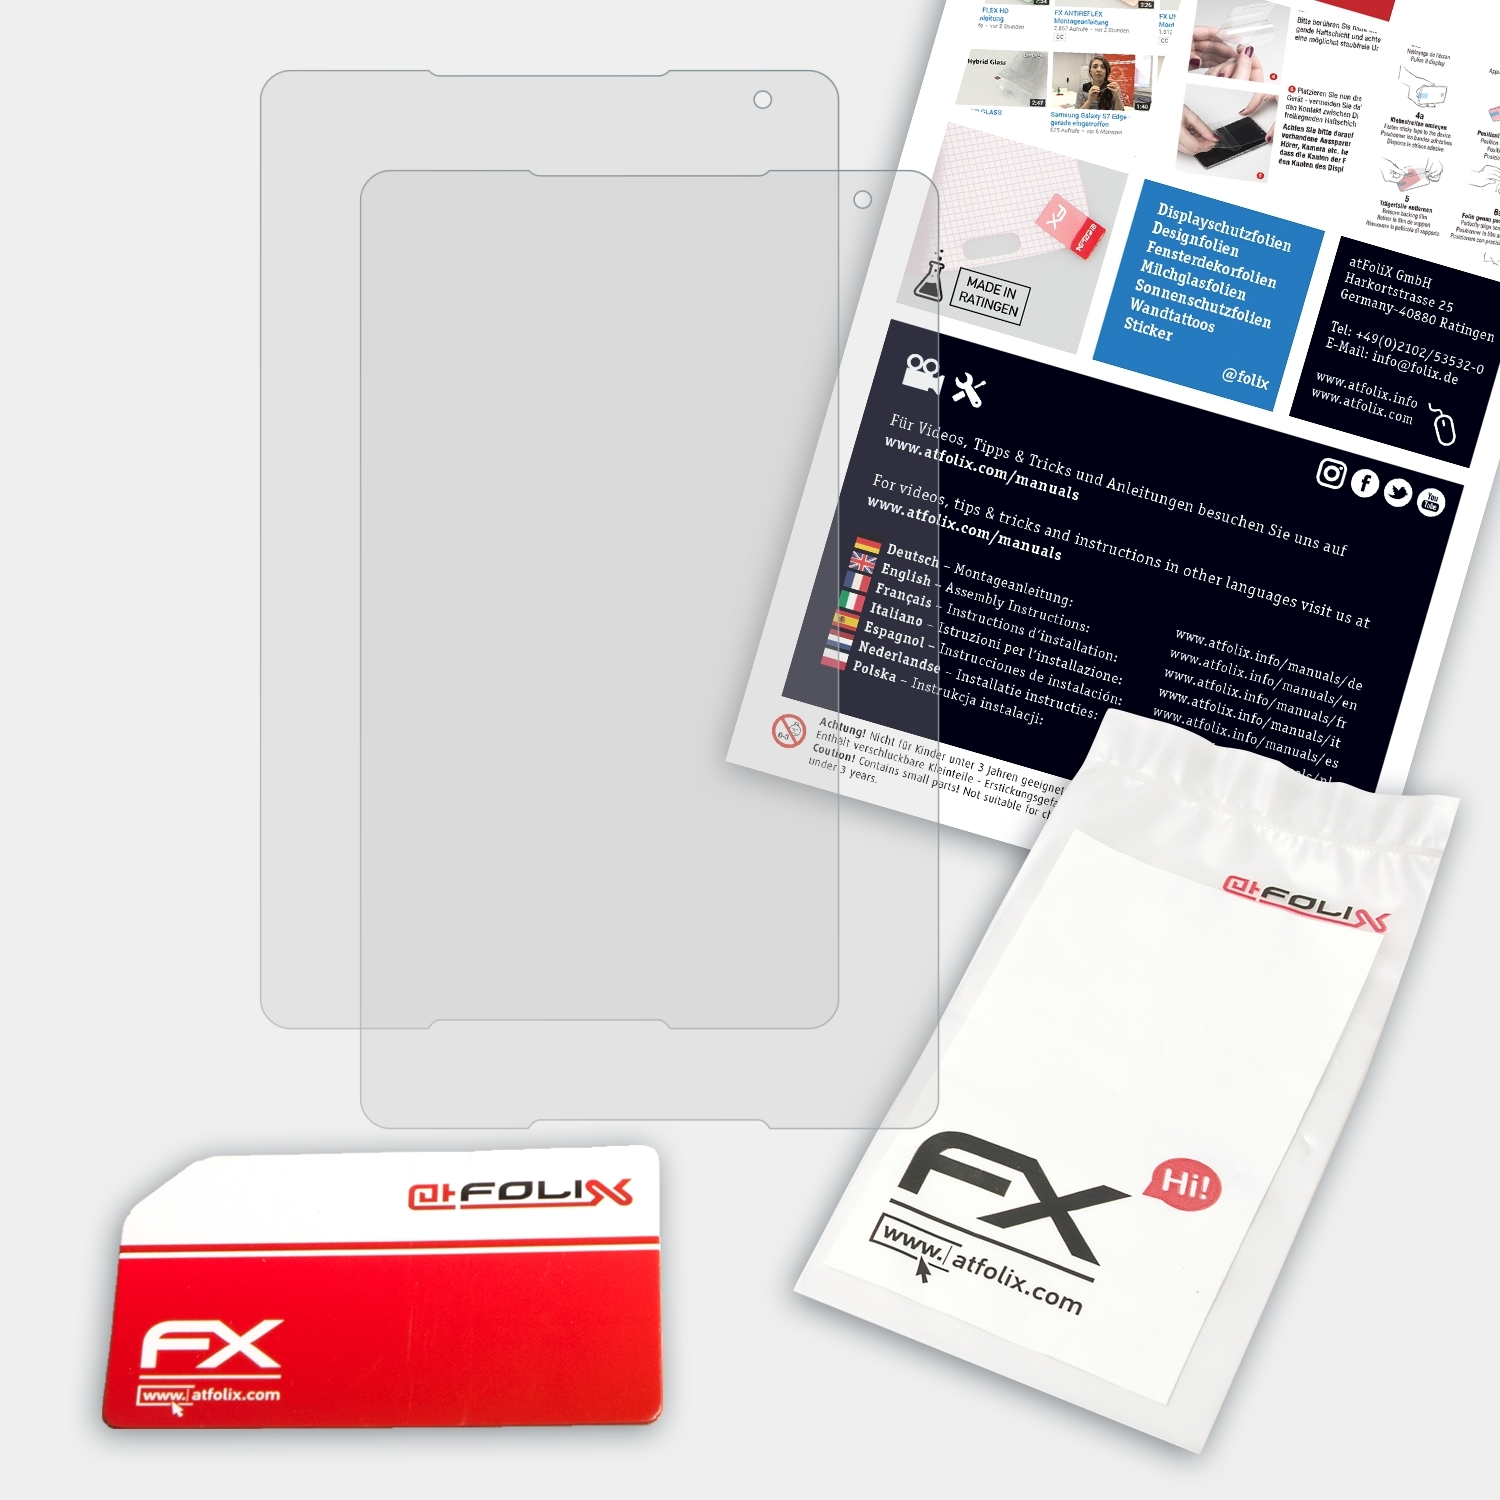 FX-Antireflex Alcatel ATFOLIX 4G) Displayschutz(für 10 2x A3